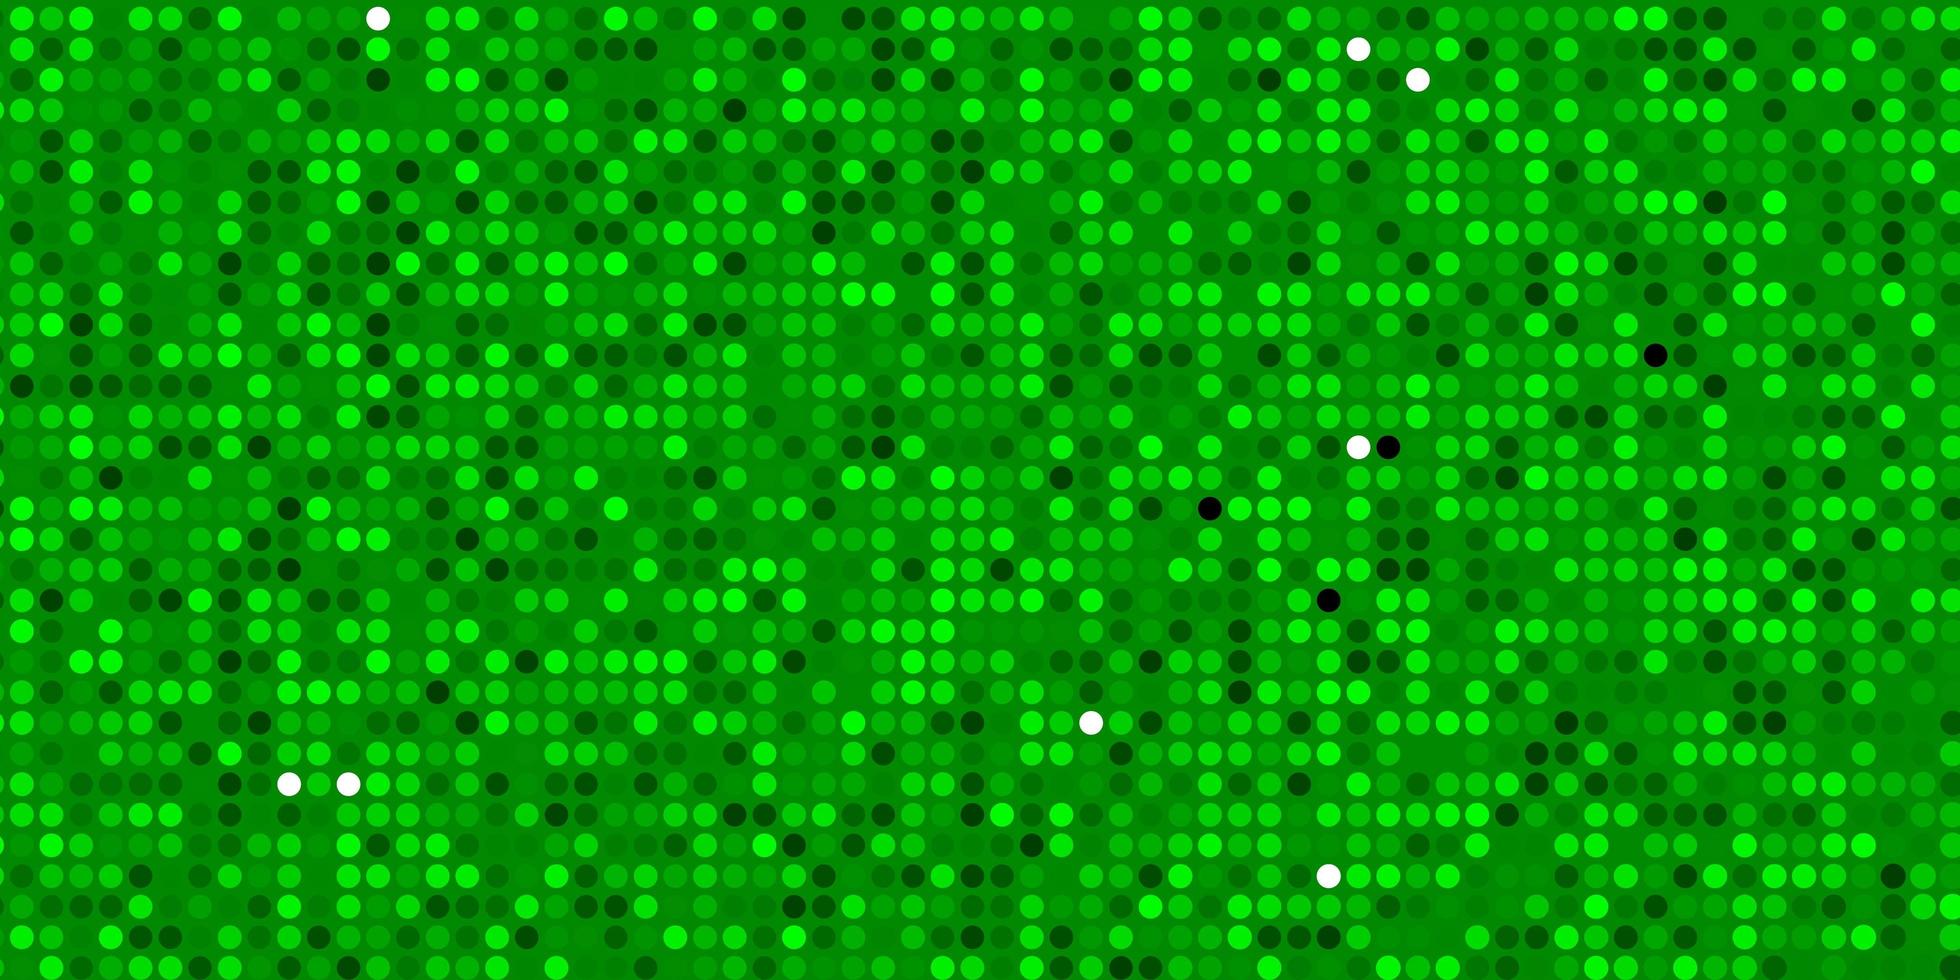 ljusgrön vektorlayout med cirkelformer vektor